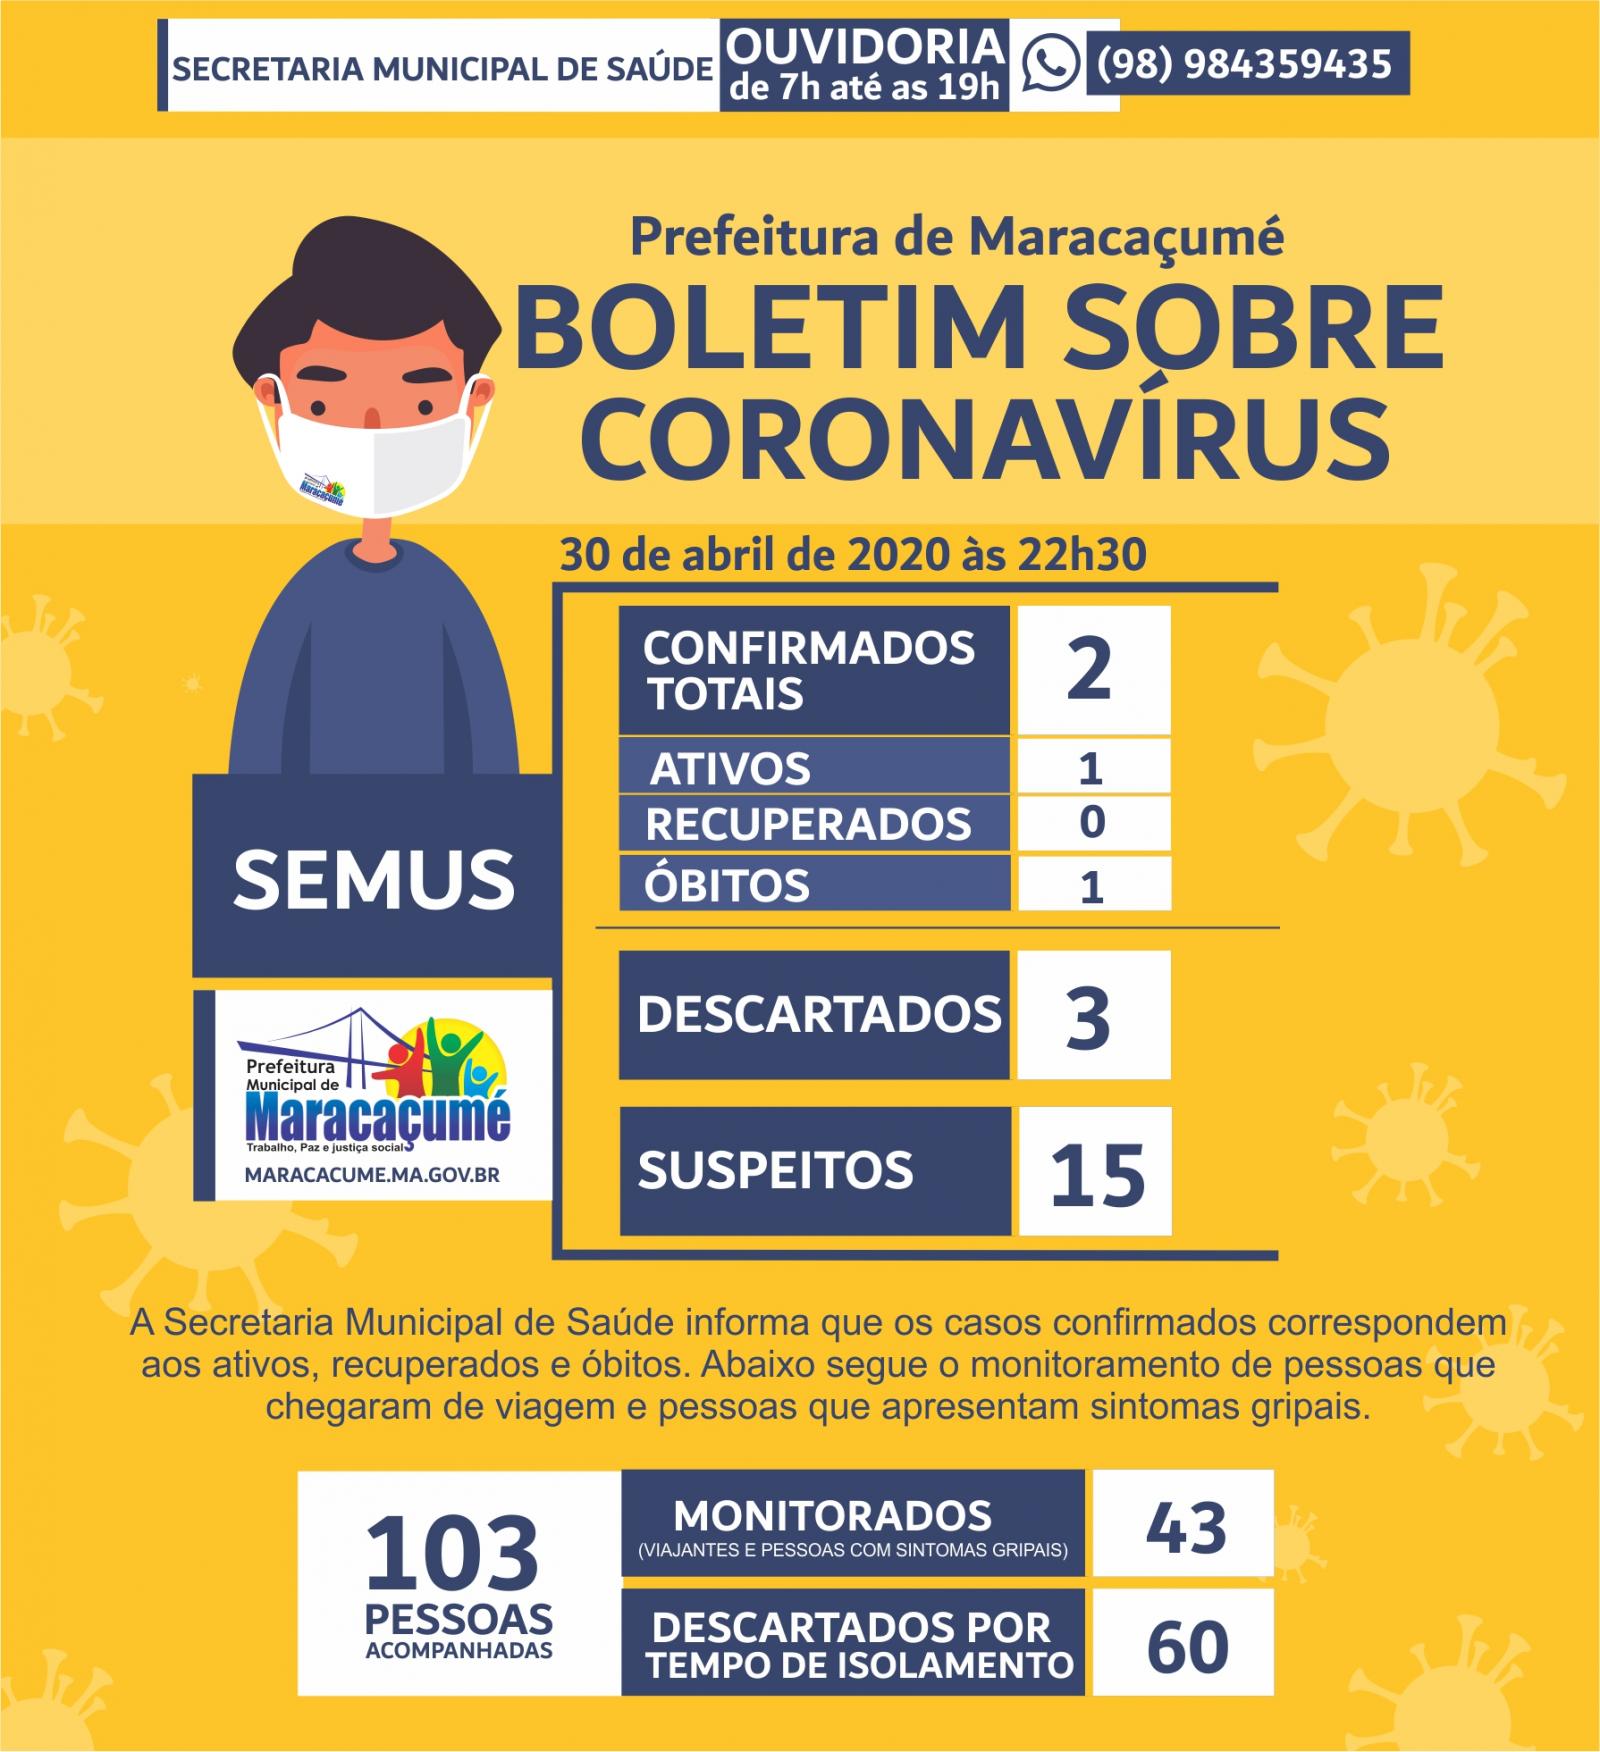 URGENTE: Maracaçumé confirma primeira morte pelo novo coronavírus